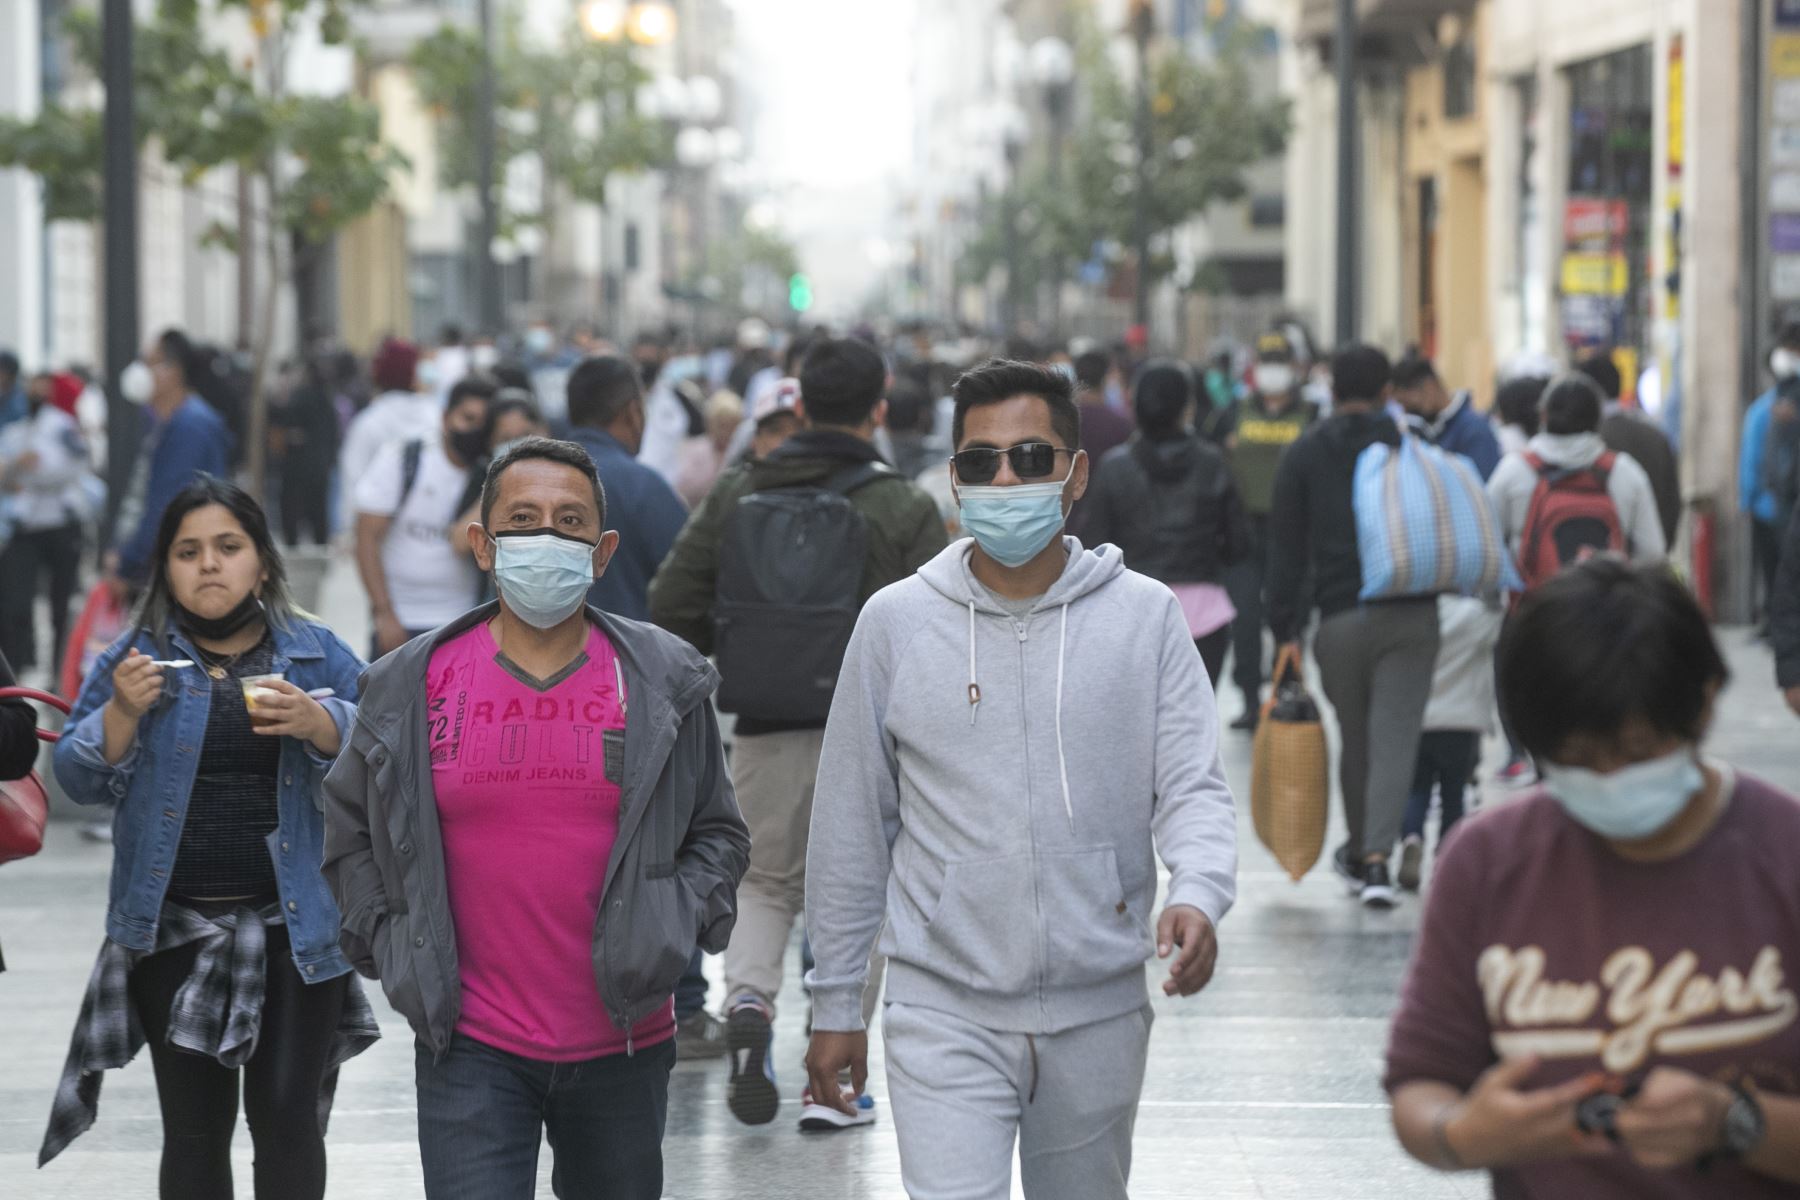 Jirón de la Unión, Centro de Lima, pandemia. gente caminando, mascarillas, covid-19. Foto: ANDINA/Carla Patiño.